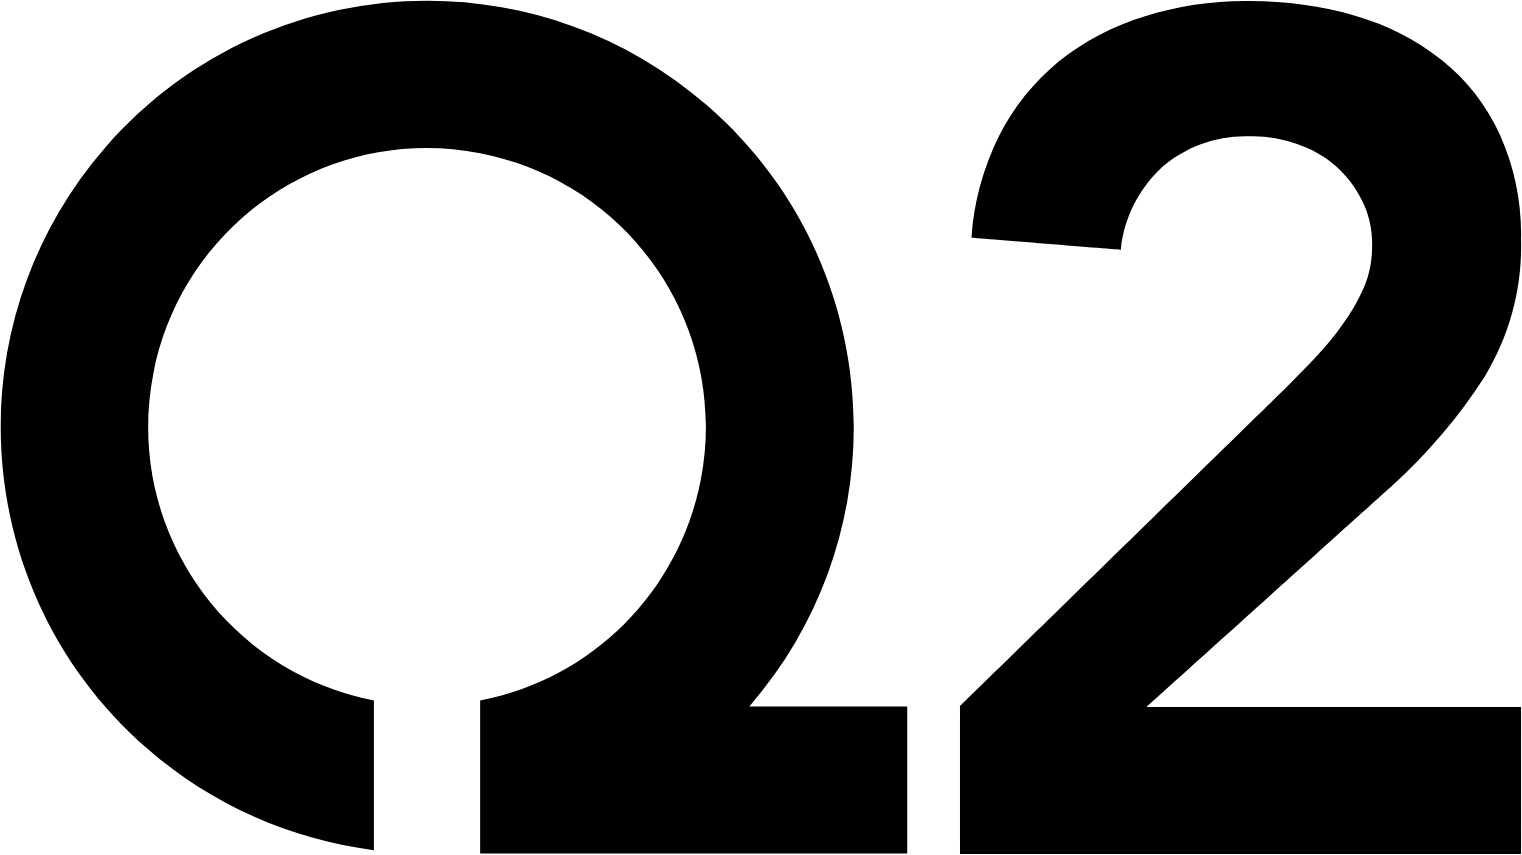 Q2 logo (PNG transparent)